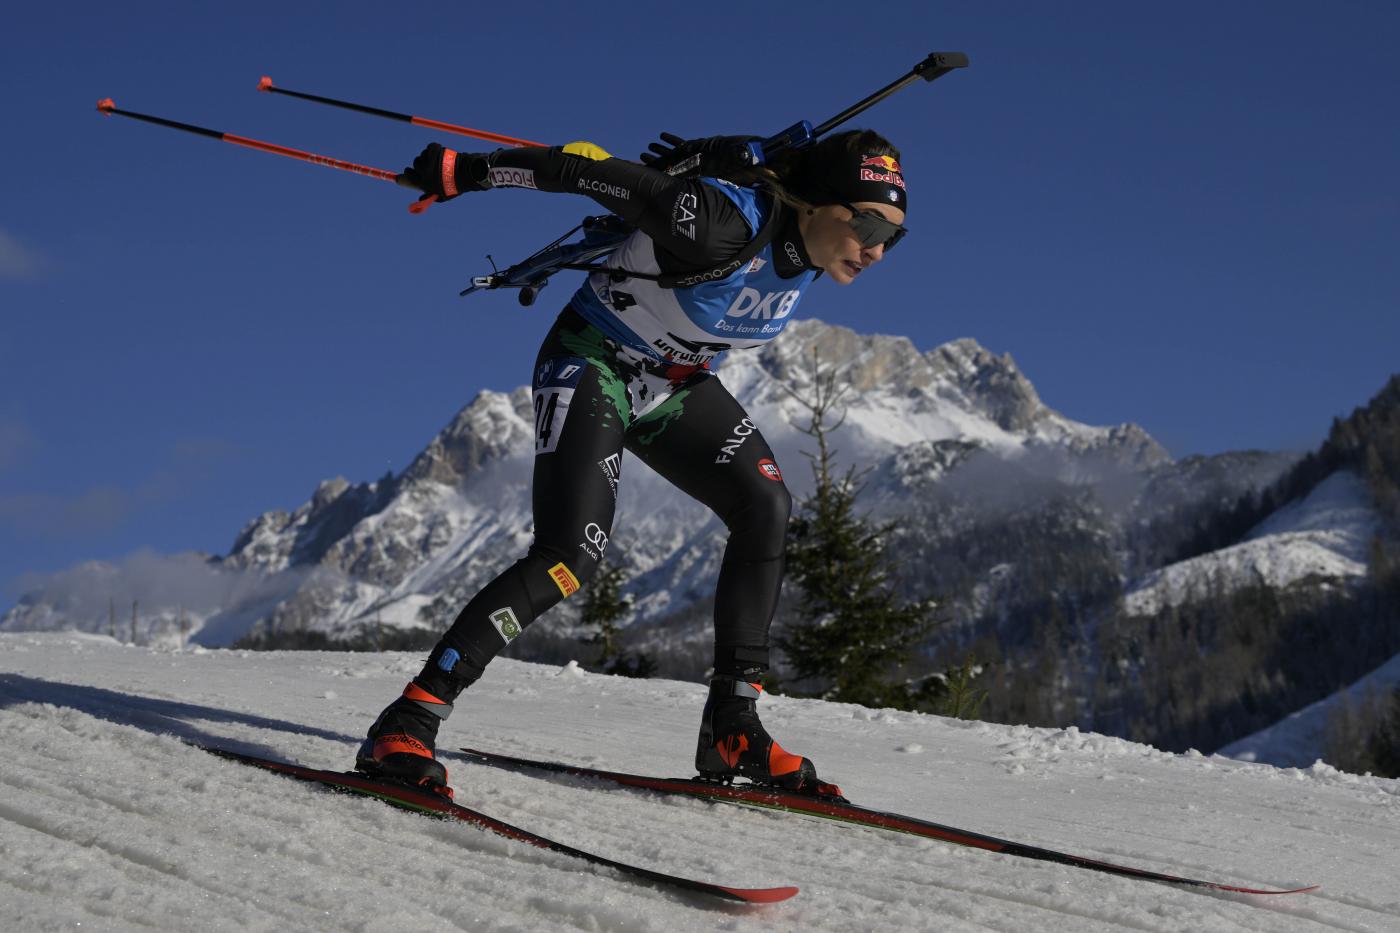 Calendario biathlon oggi, Annecy 2022 orari gare 16 dicembre, programma, tv, streaming, startlist, italiani in gara